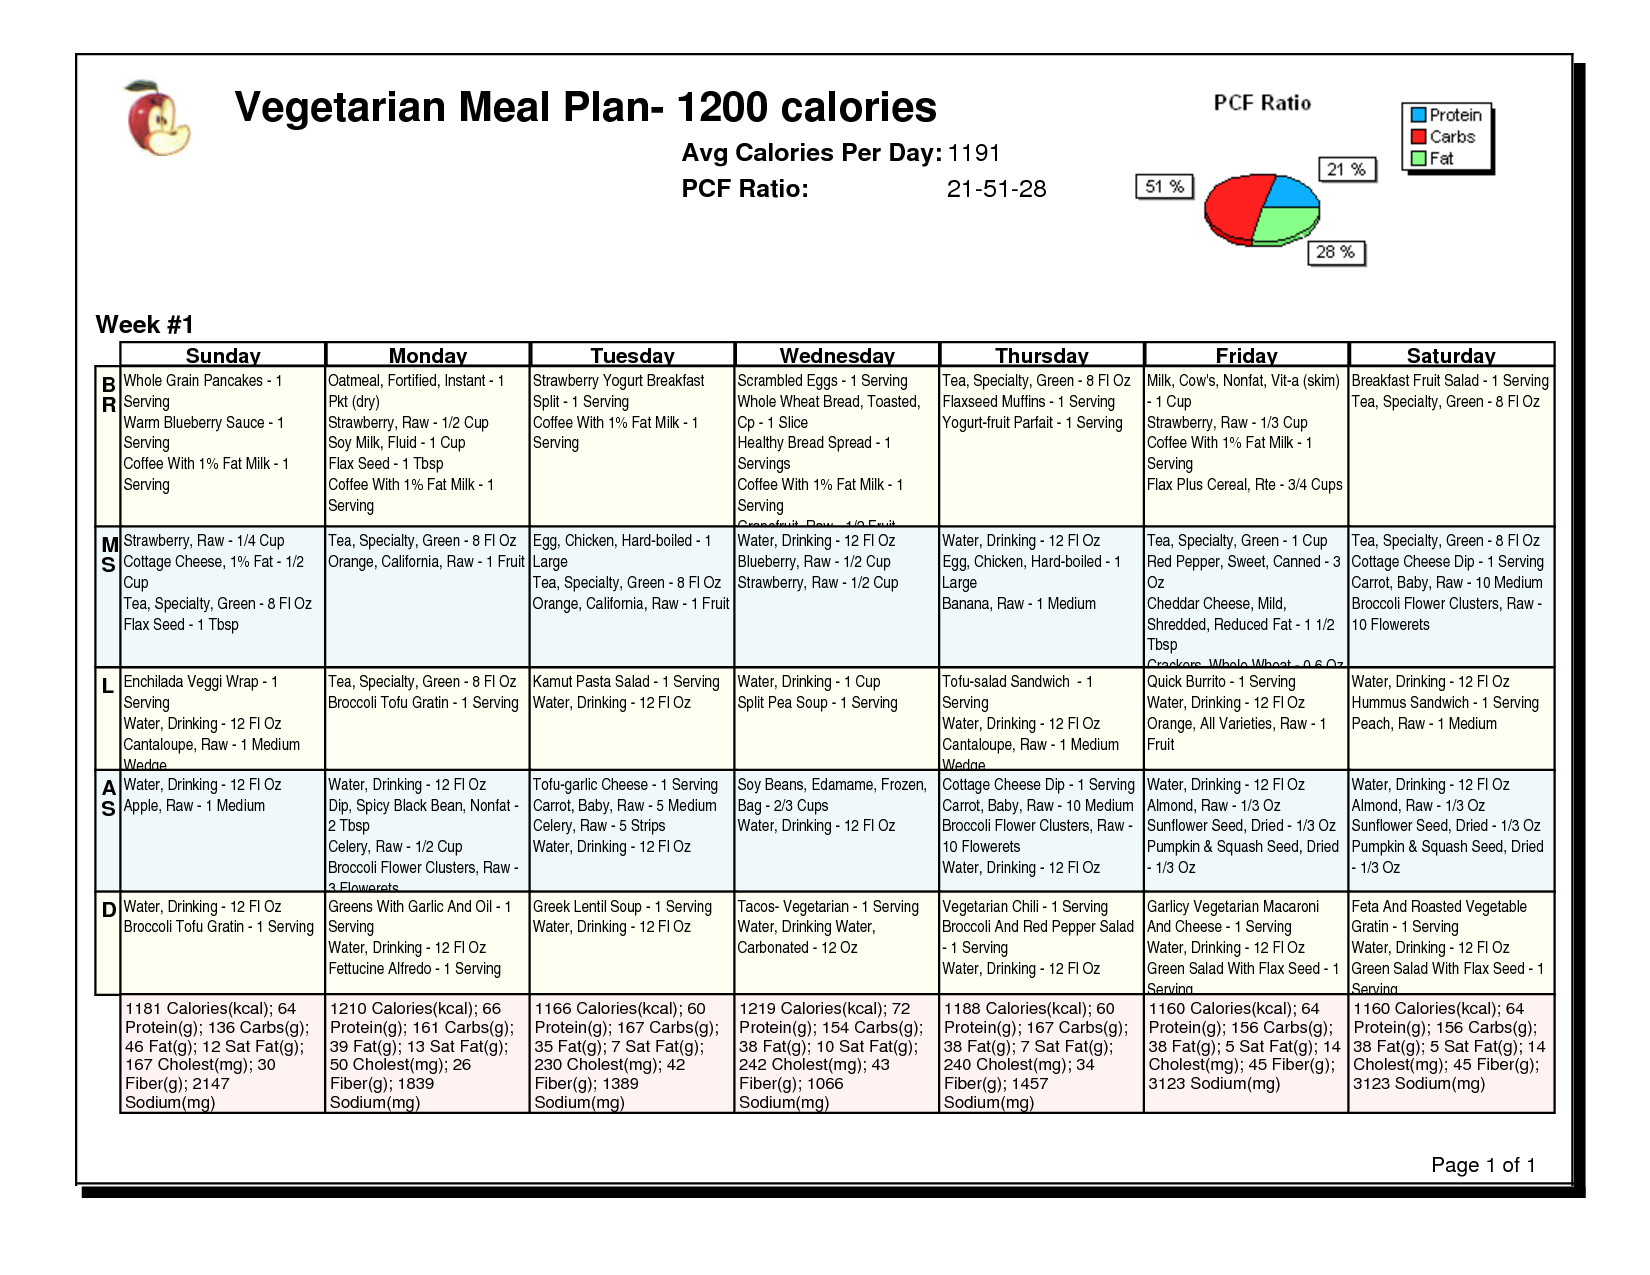 Low Calorie Vegan Plan
 Pin on Healthy Eating